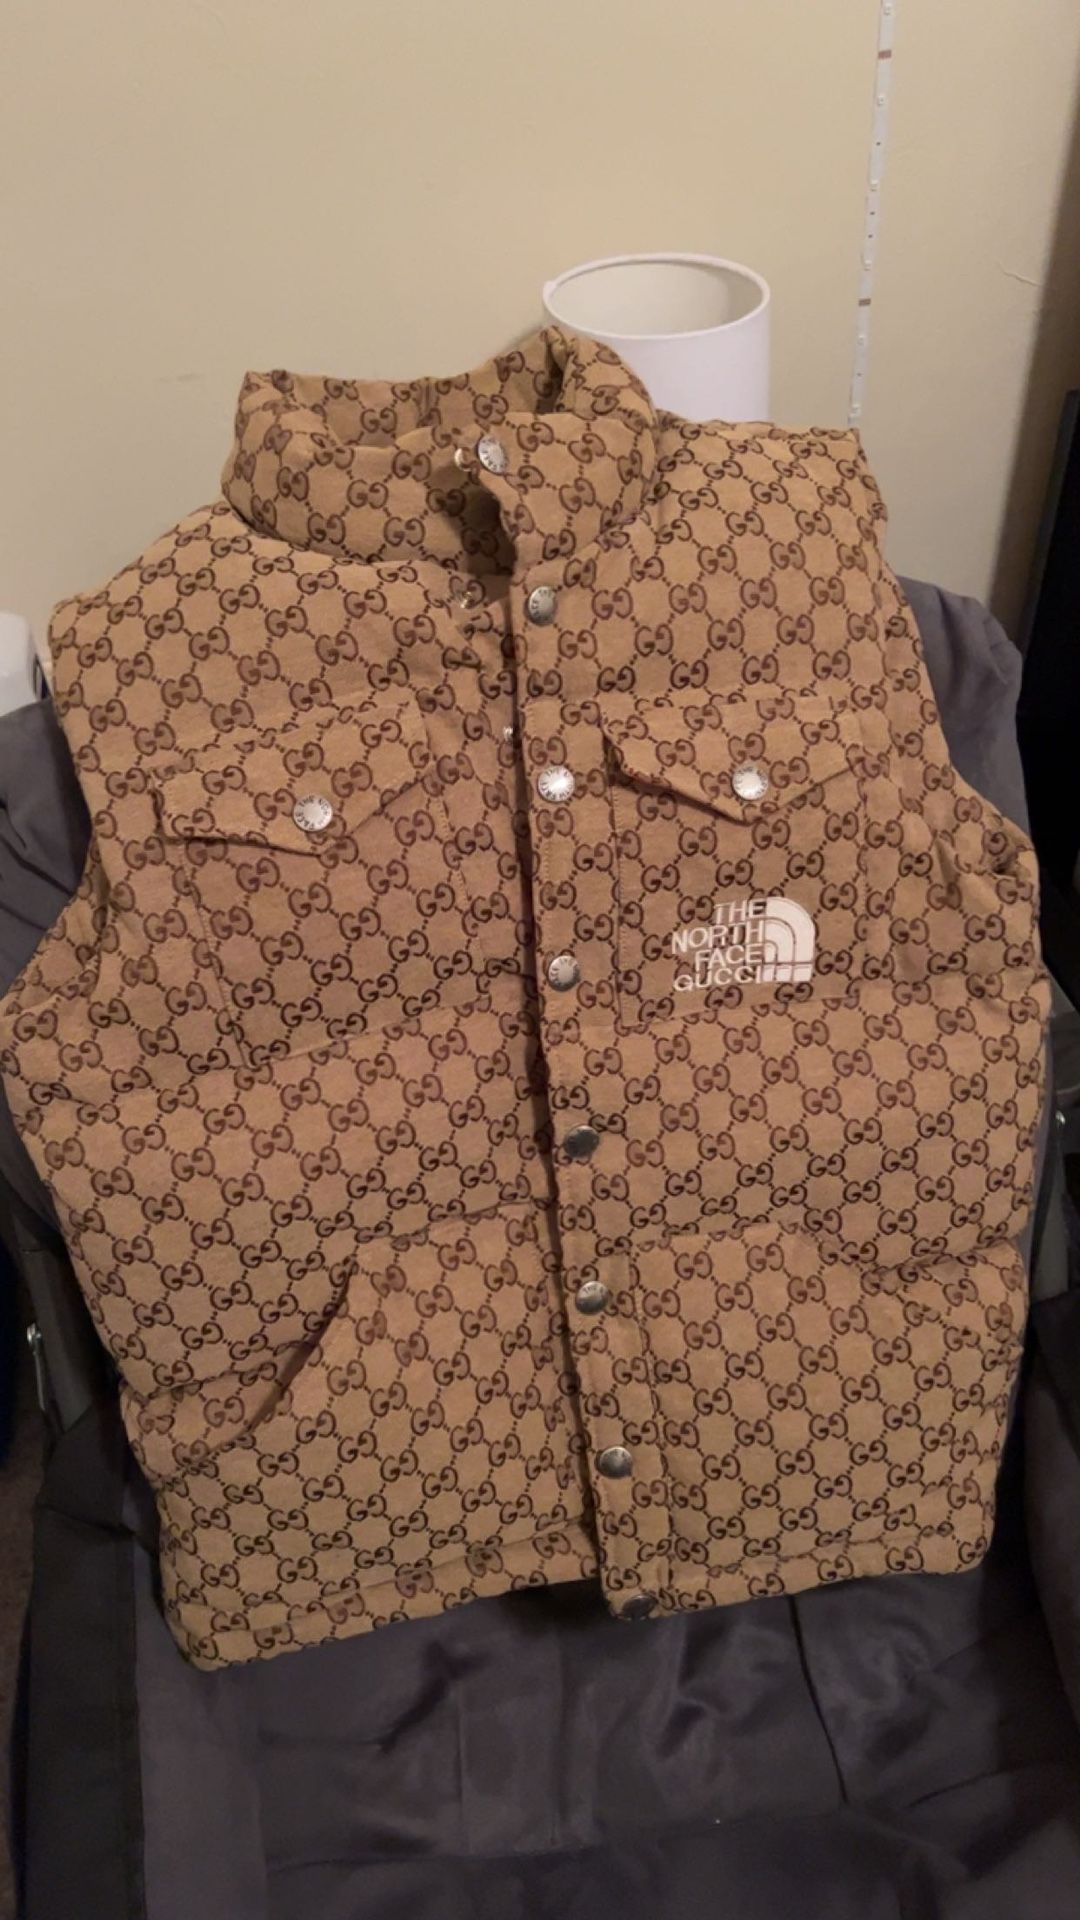 Gucci X NorthFace Vest